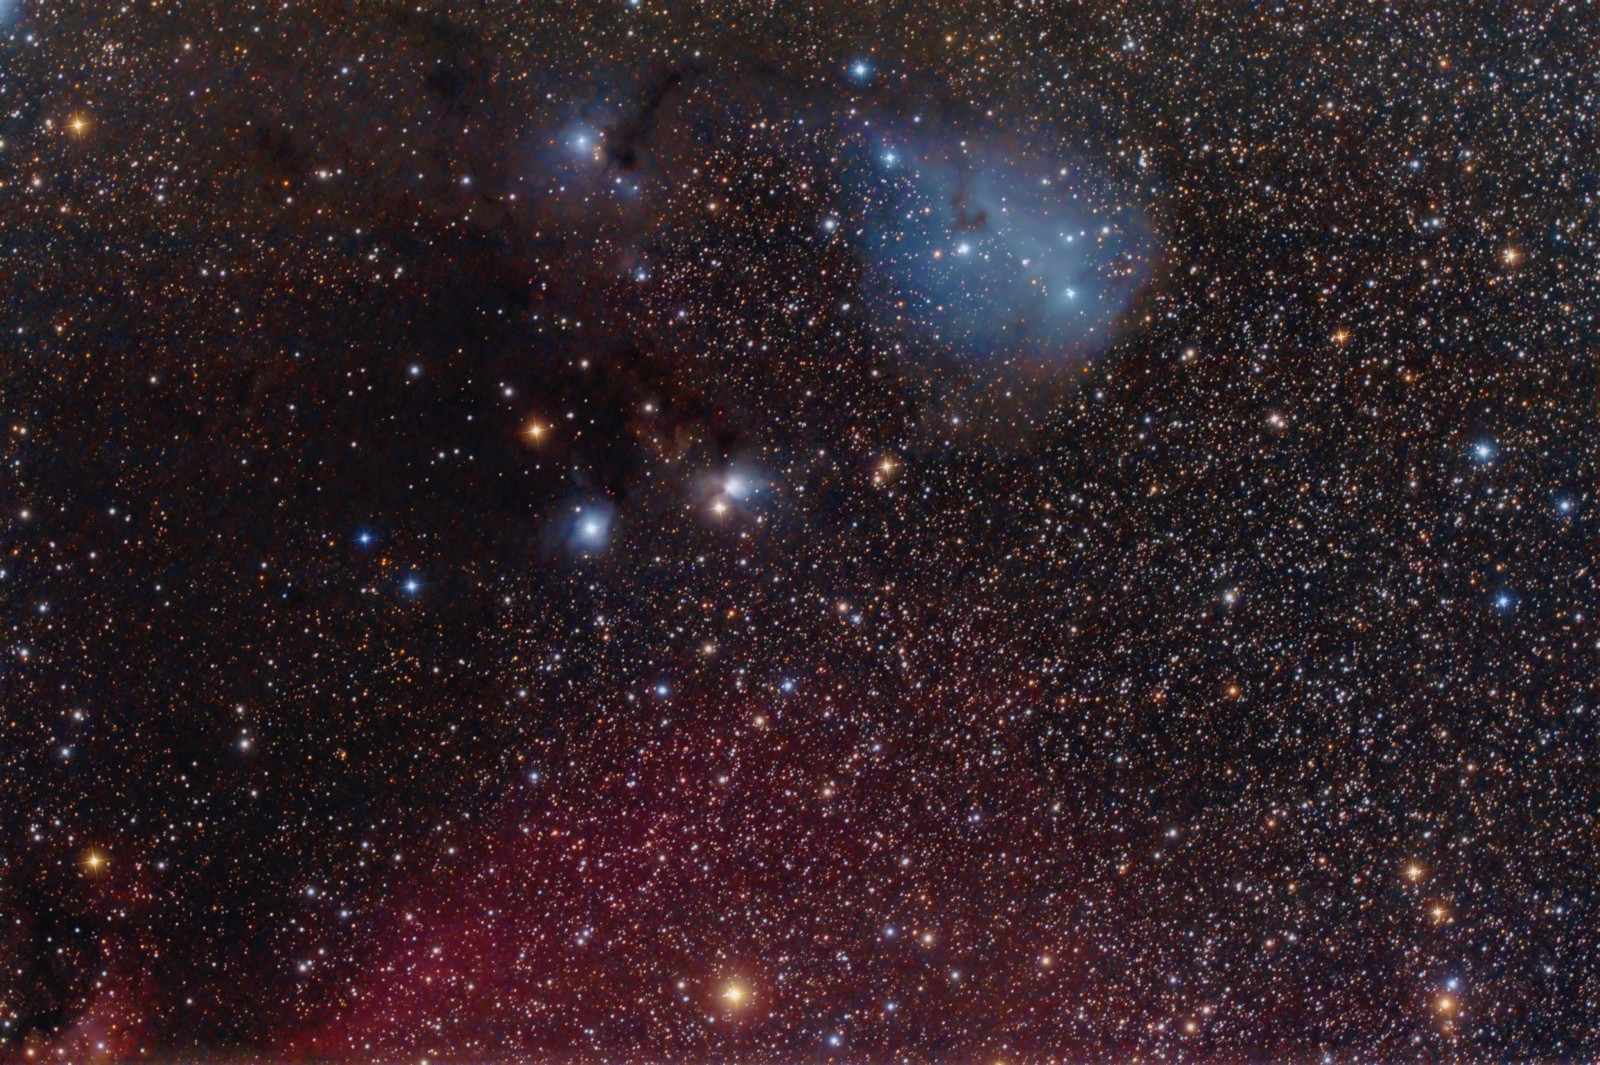 tinh vân, con kỳ lân, trong chòm sao, phản chiếu, IC 447